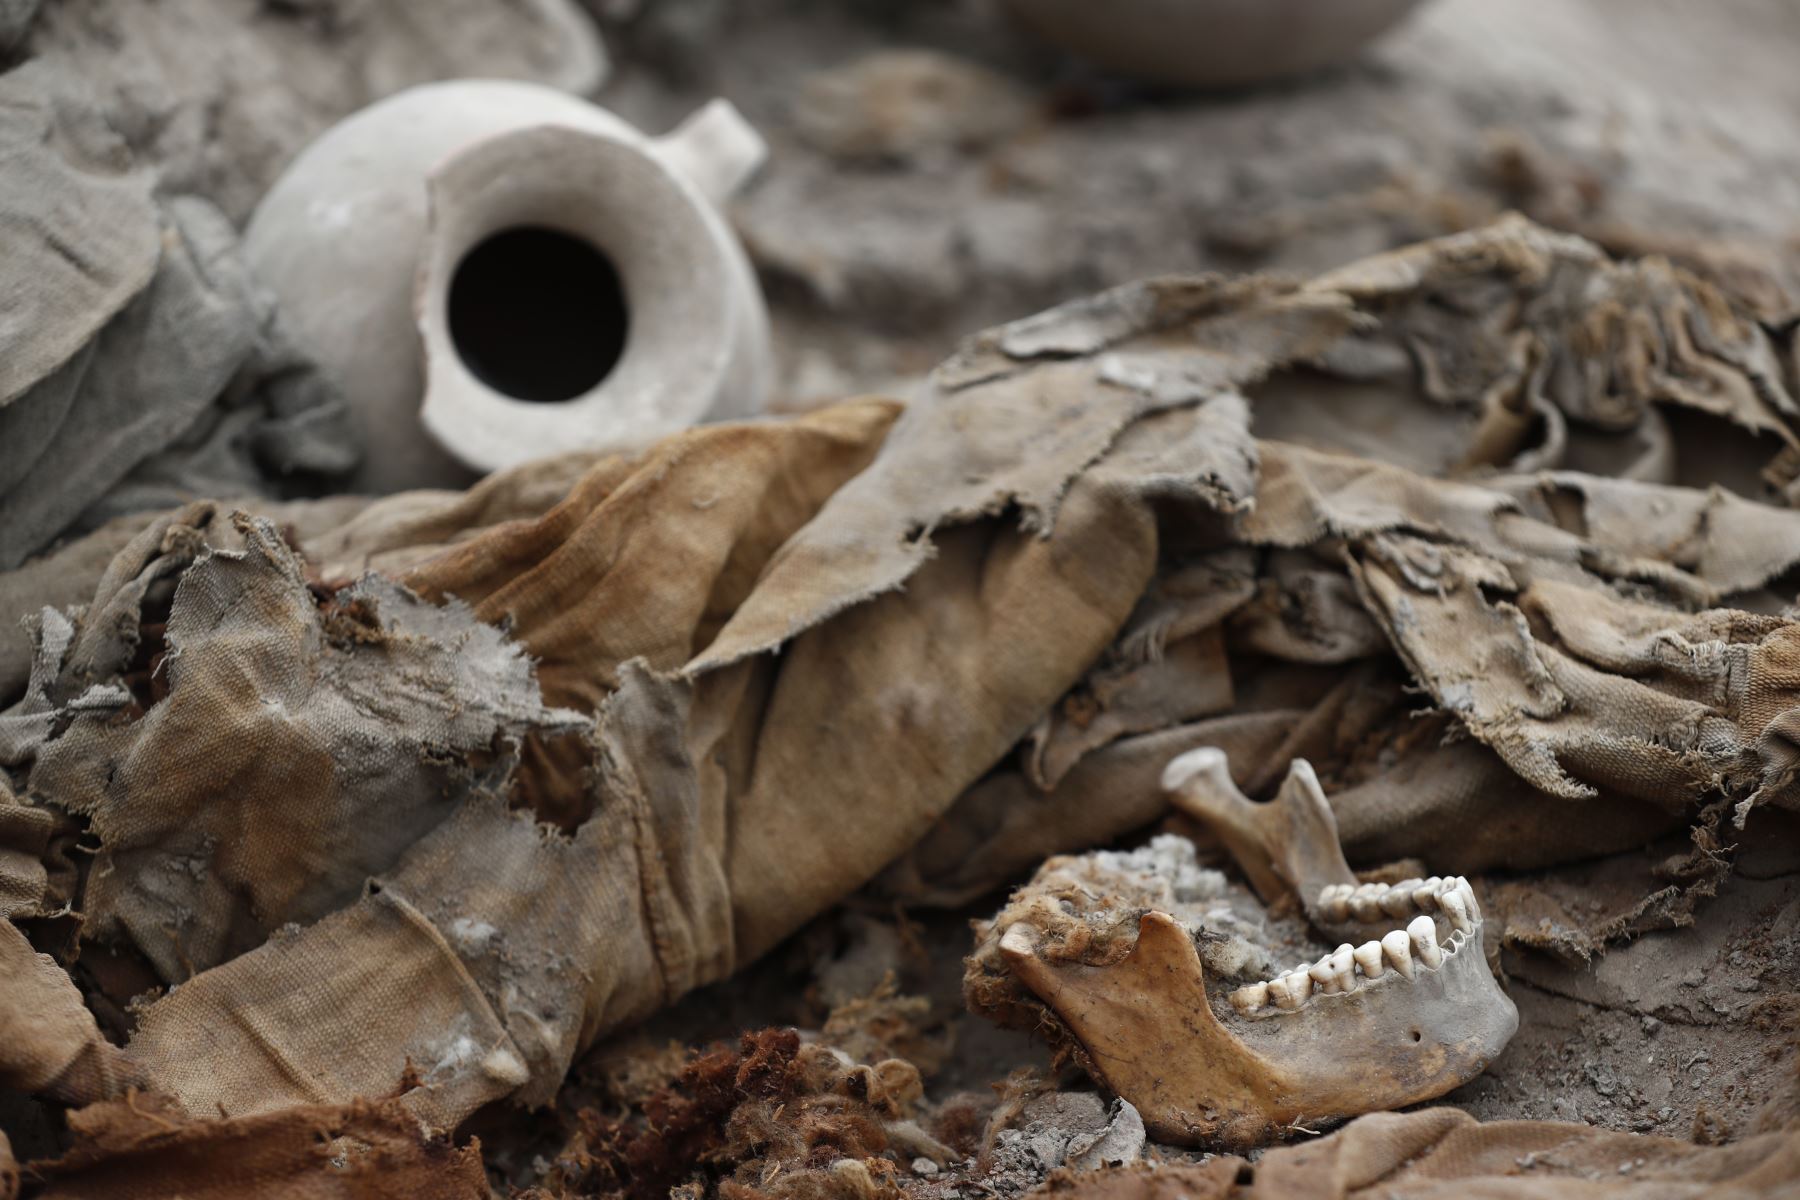 Tras unas excavaciones, descubren 3 momias envueltas en fardos funerarios en la huaca Tambo Inga, ubicada en el distrito de Puente Piedra, con una antigüedad aproximada de 500 años. Foto: ANDINA/Daniel Bracamonte